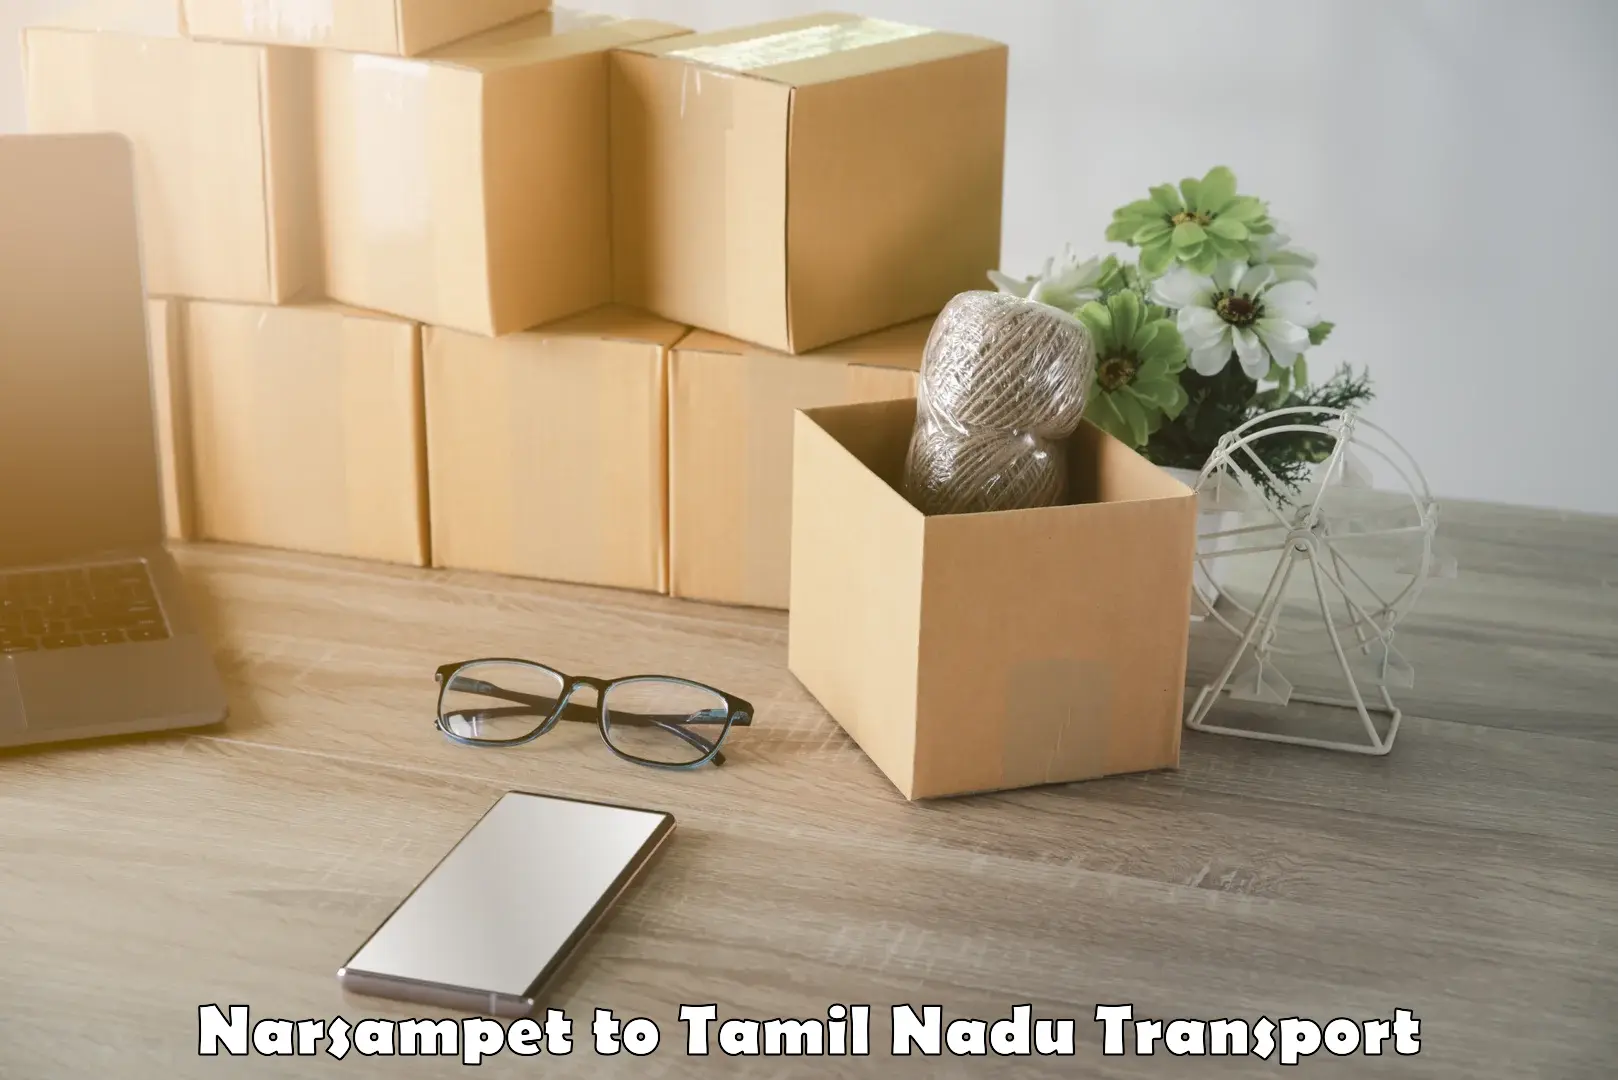 Container transport service Narsampet to IIIT Tiruchirappalli